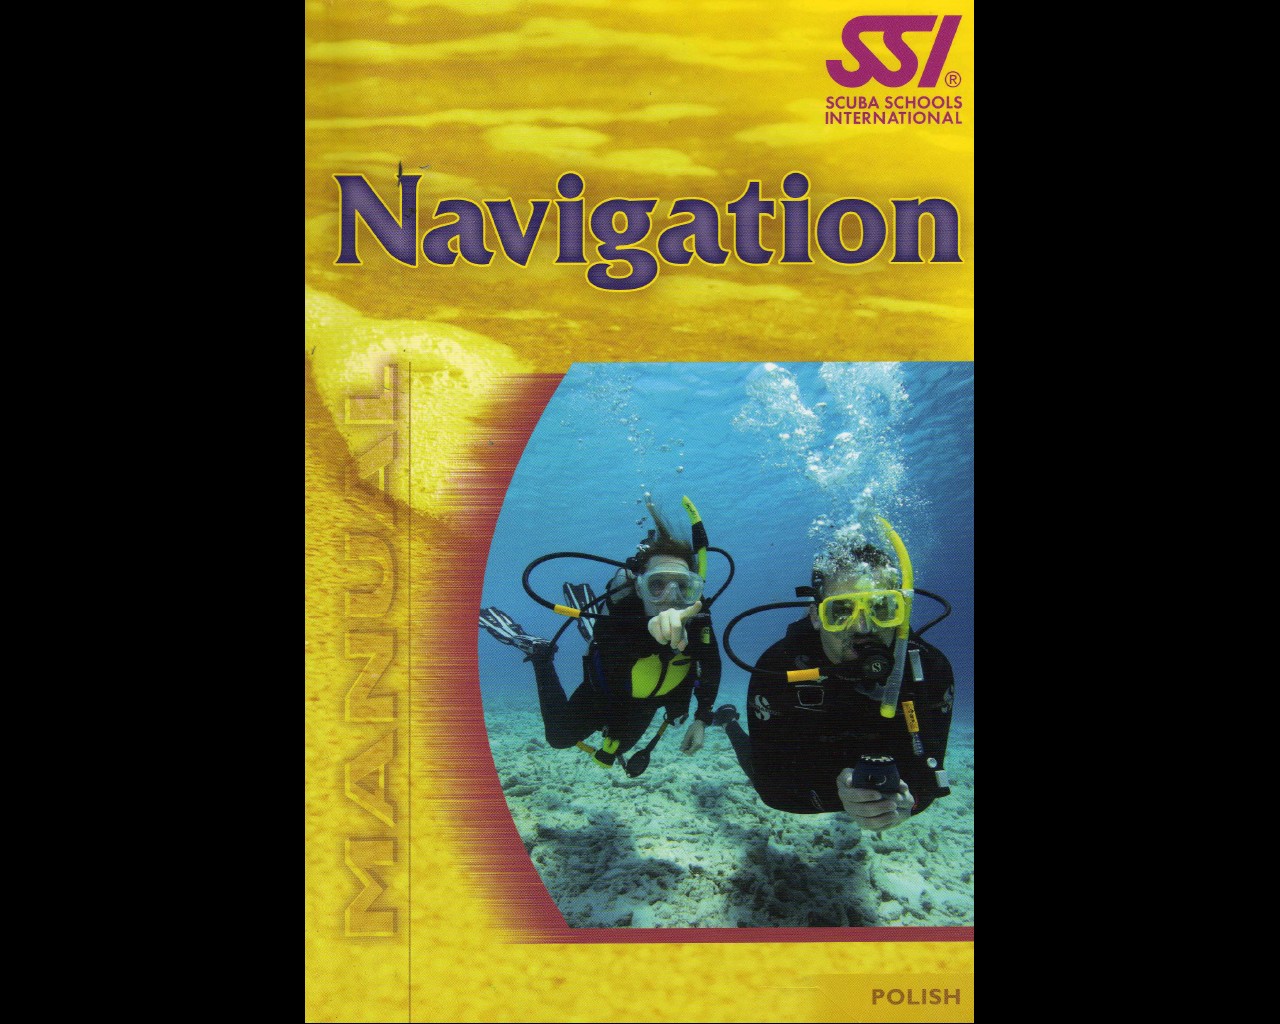 NURKOWANIE - SSI_-_Navigation_-_Nawigacja.jpg